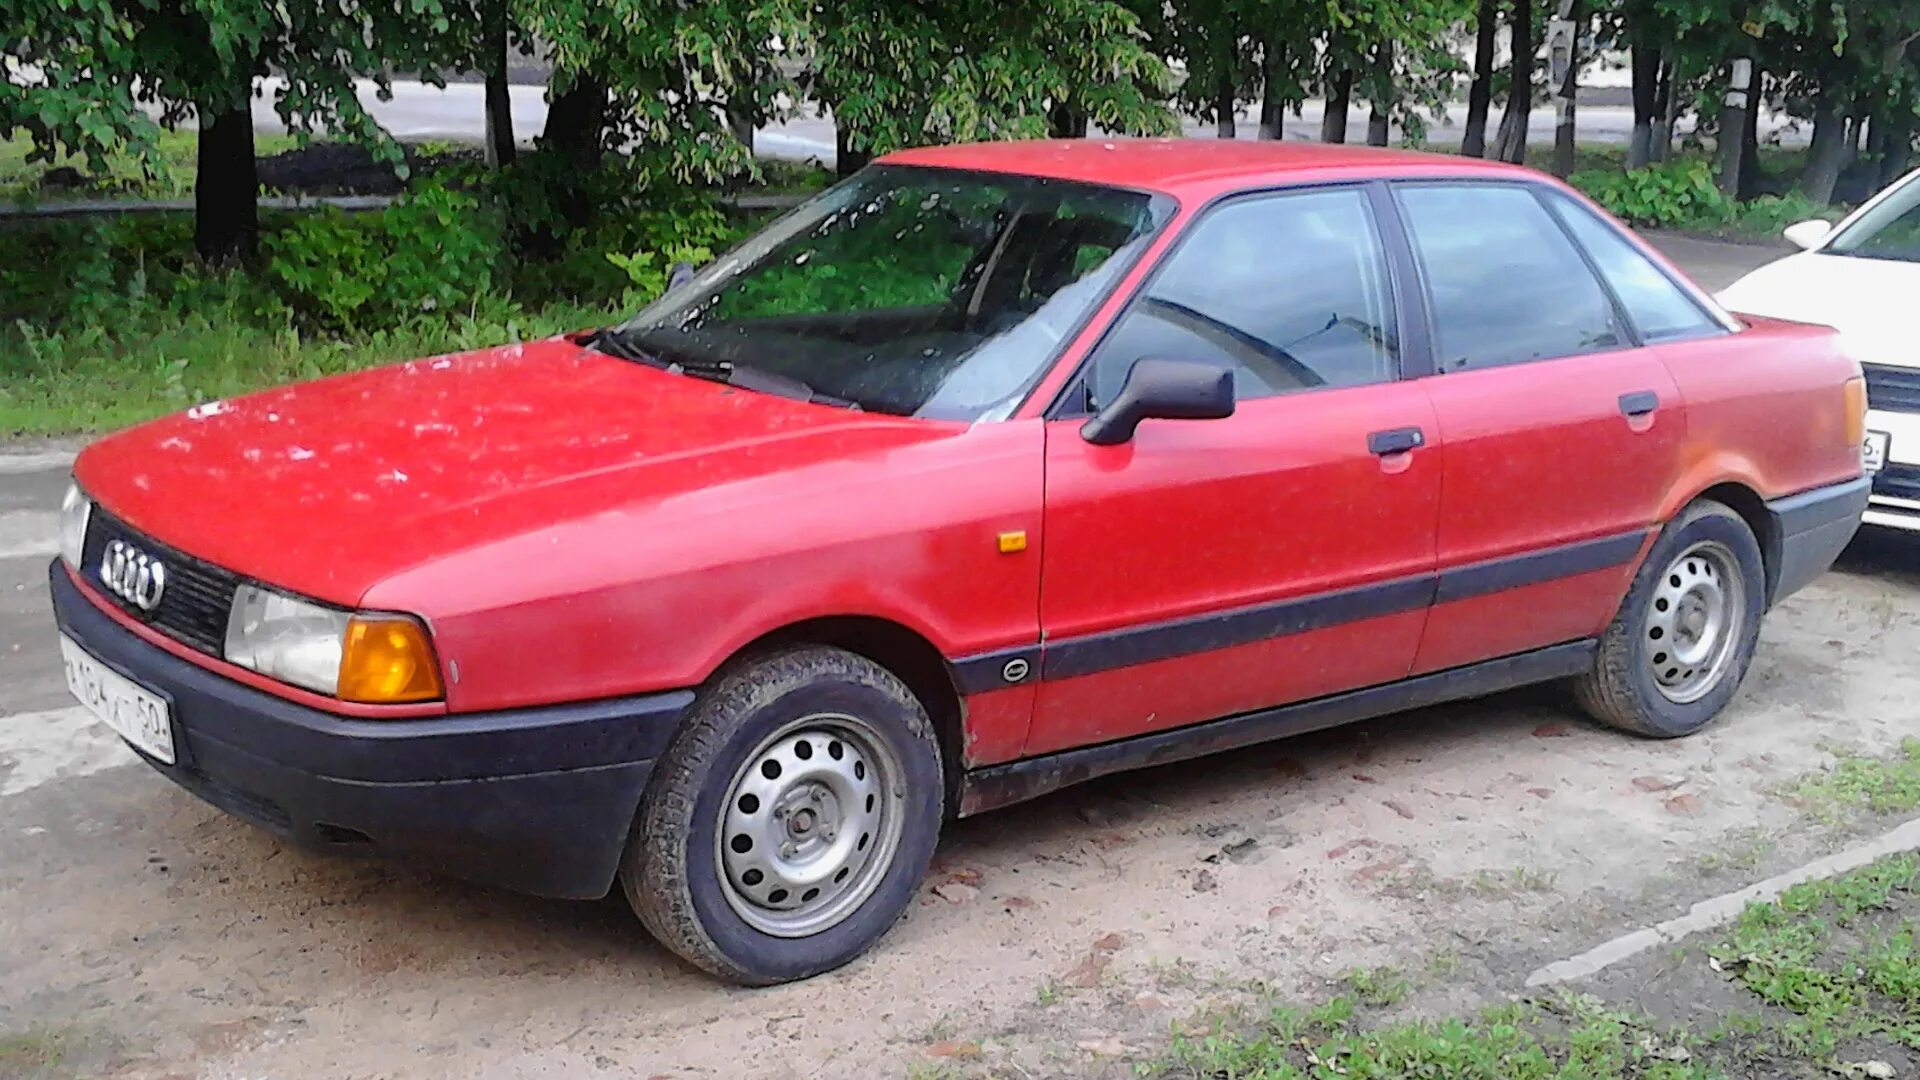 Ауди 80 красная. Ауди 80 б3 красная. Audi 80 b3 1991. Audi 80 b3 1989.